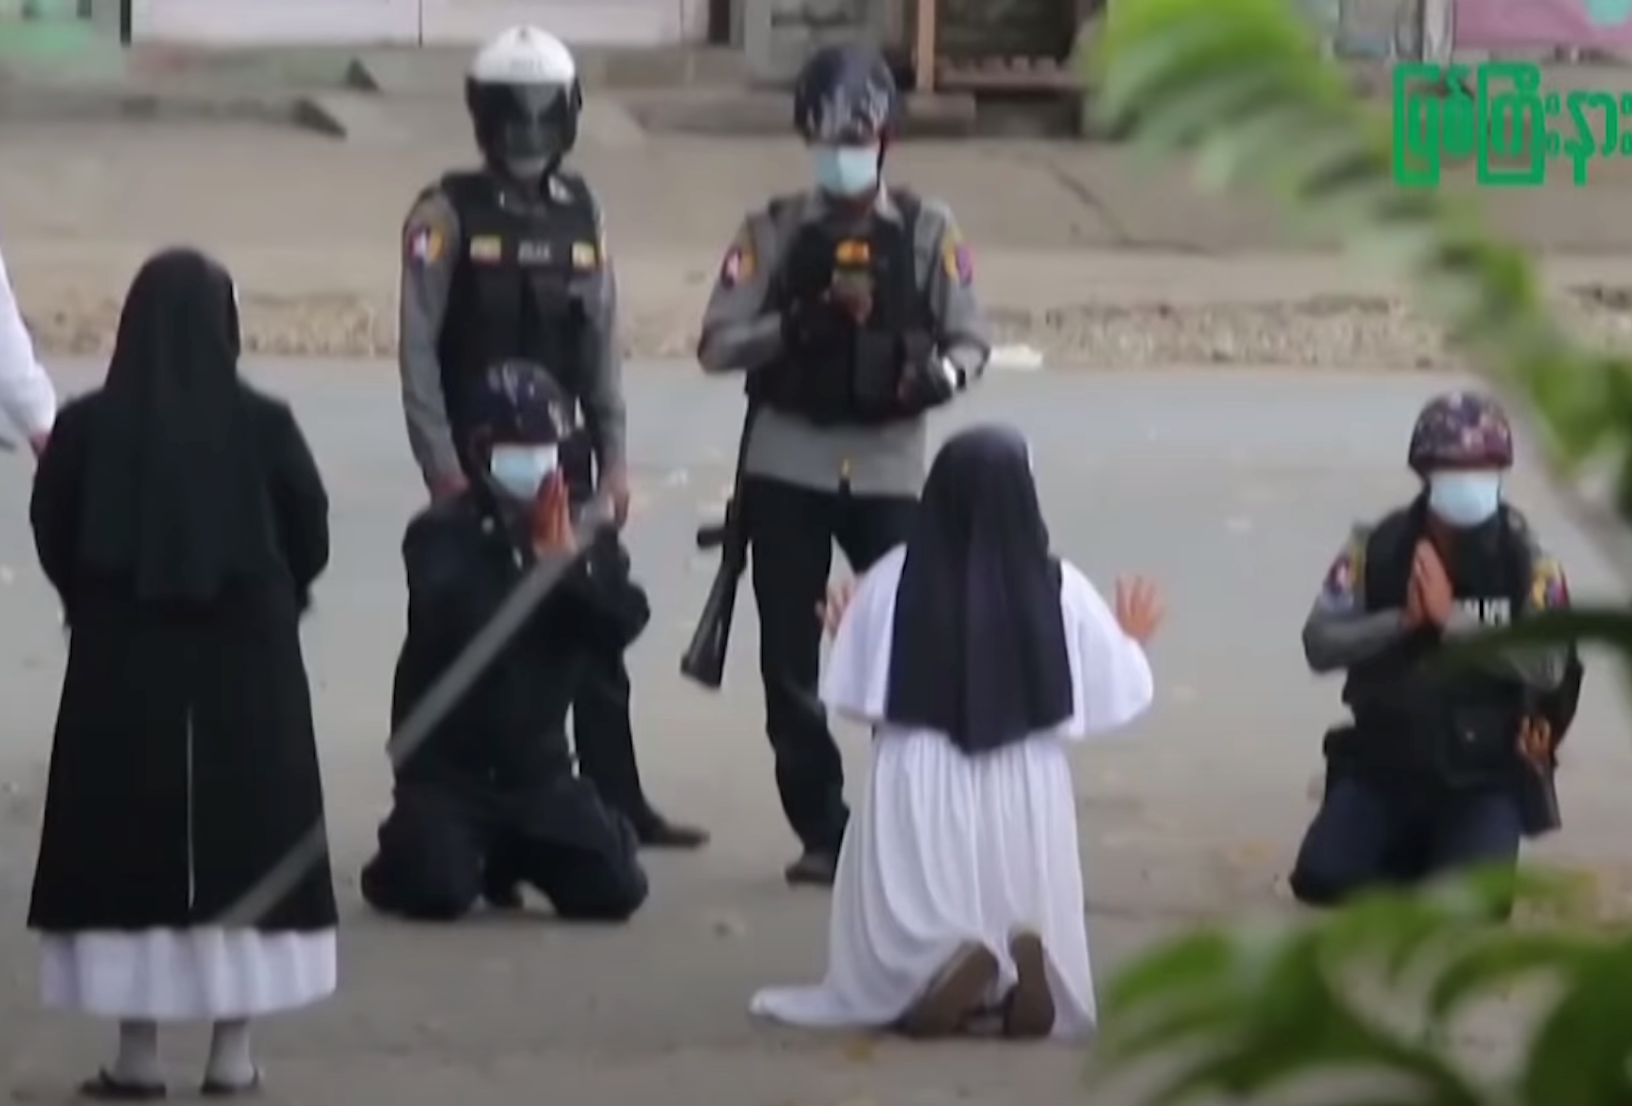 Freira pede de joelhos para que a polícia parasse de atirar (Foto: Youtube)